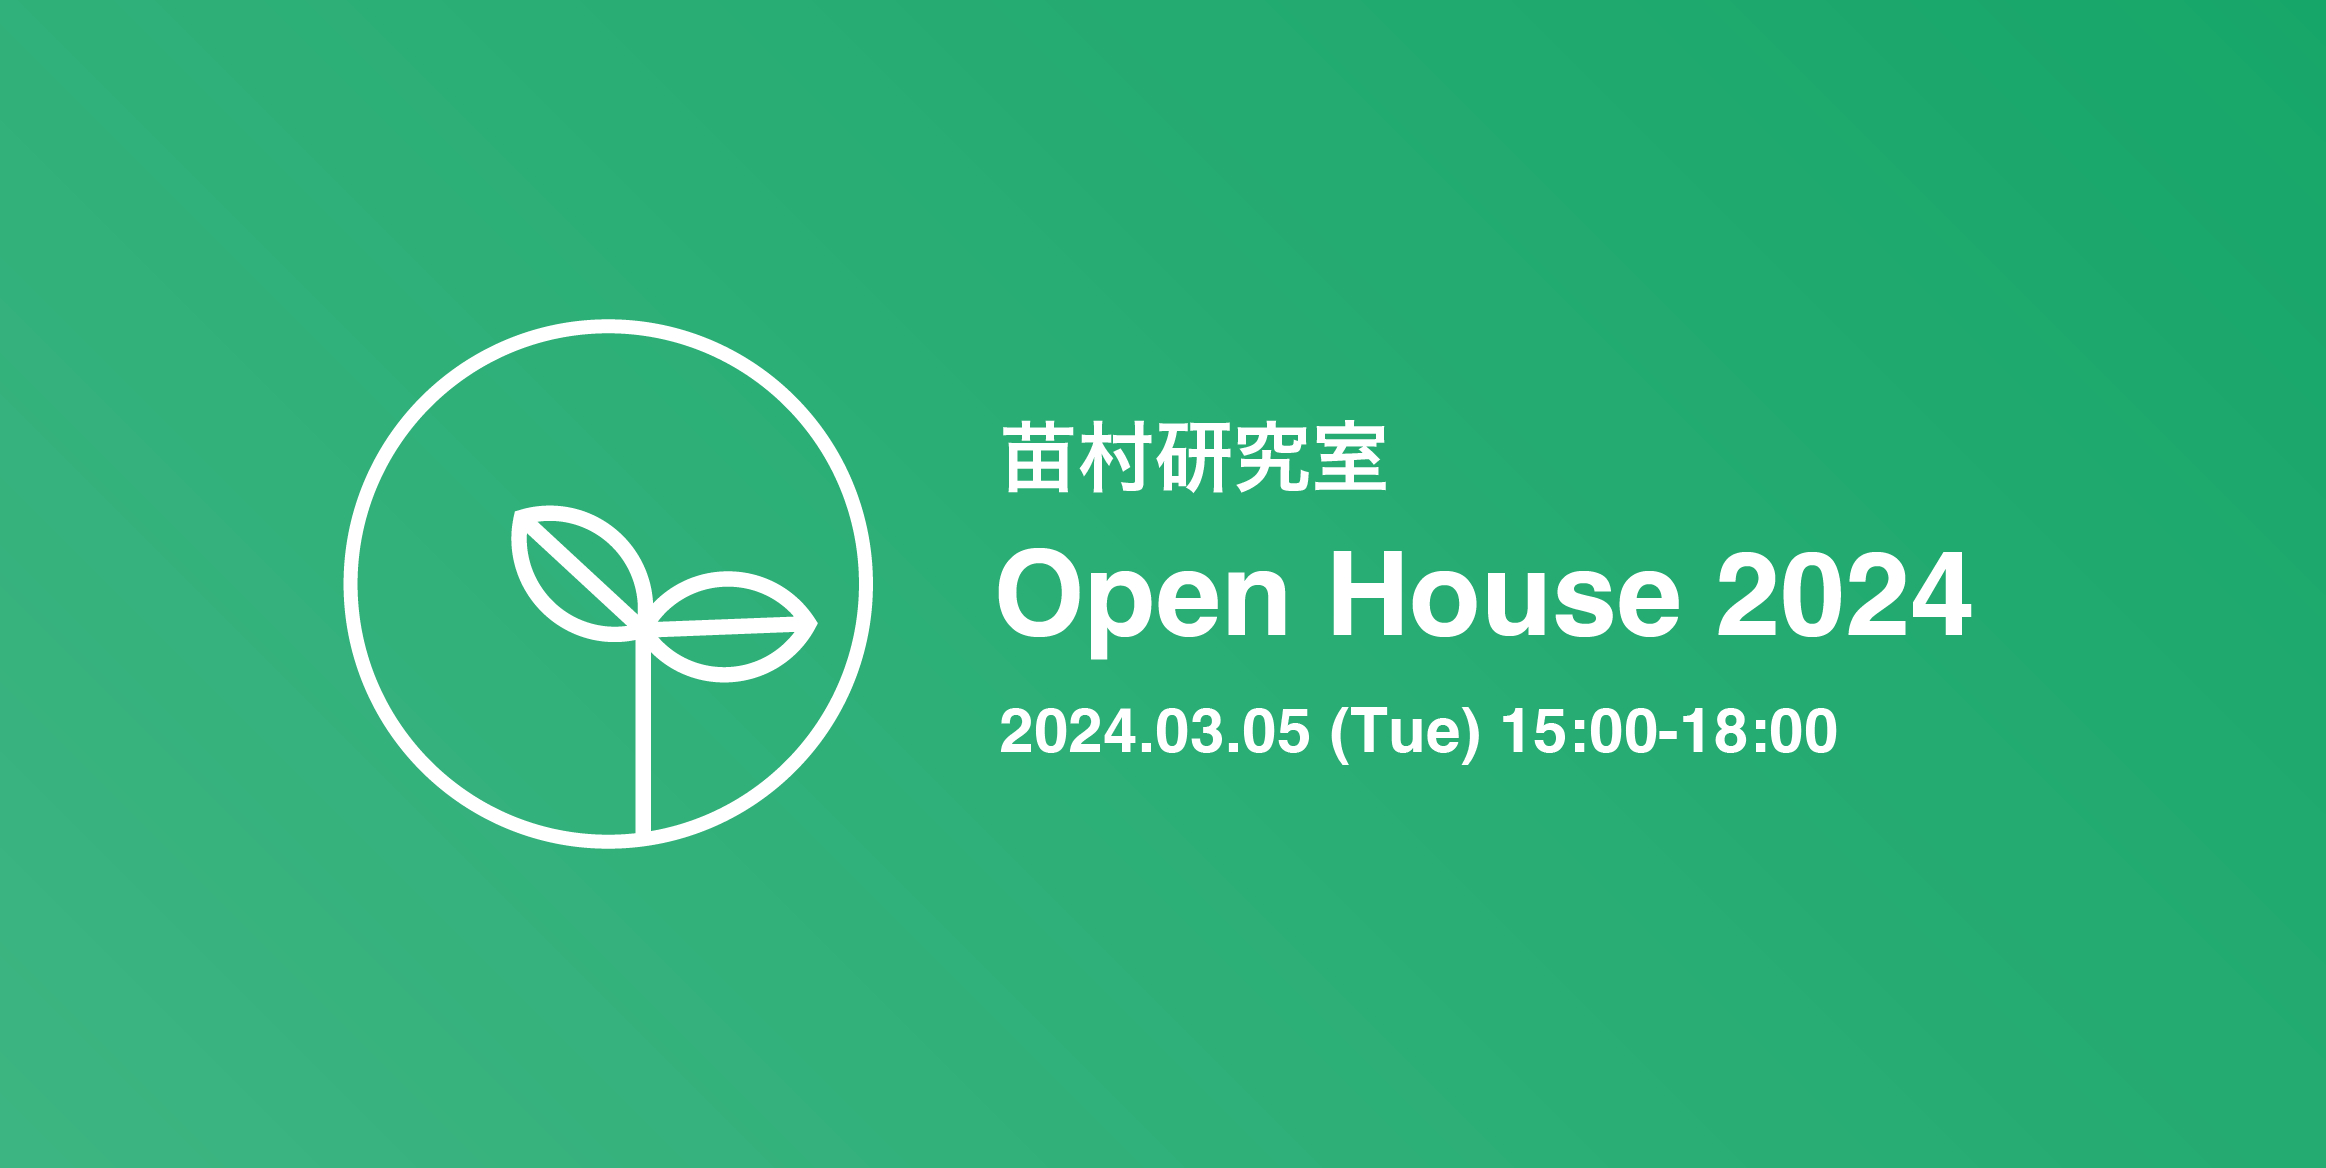 OpenHouse 2024